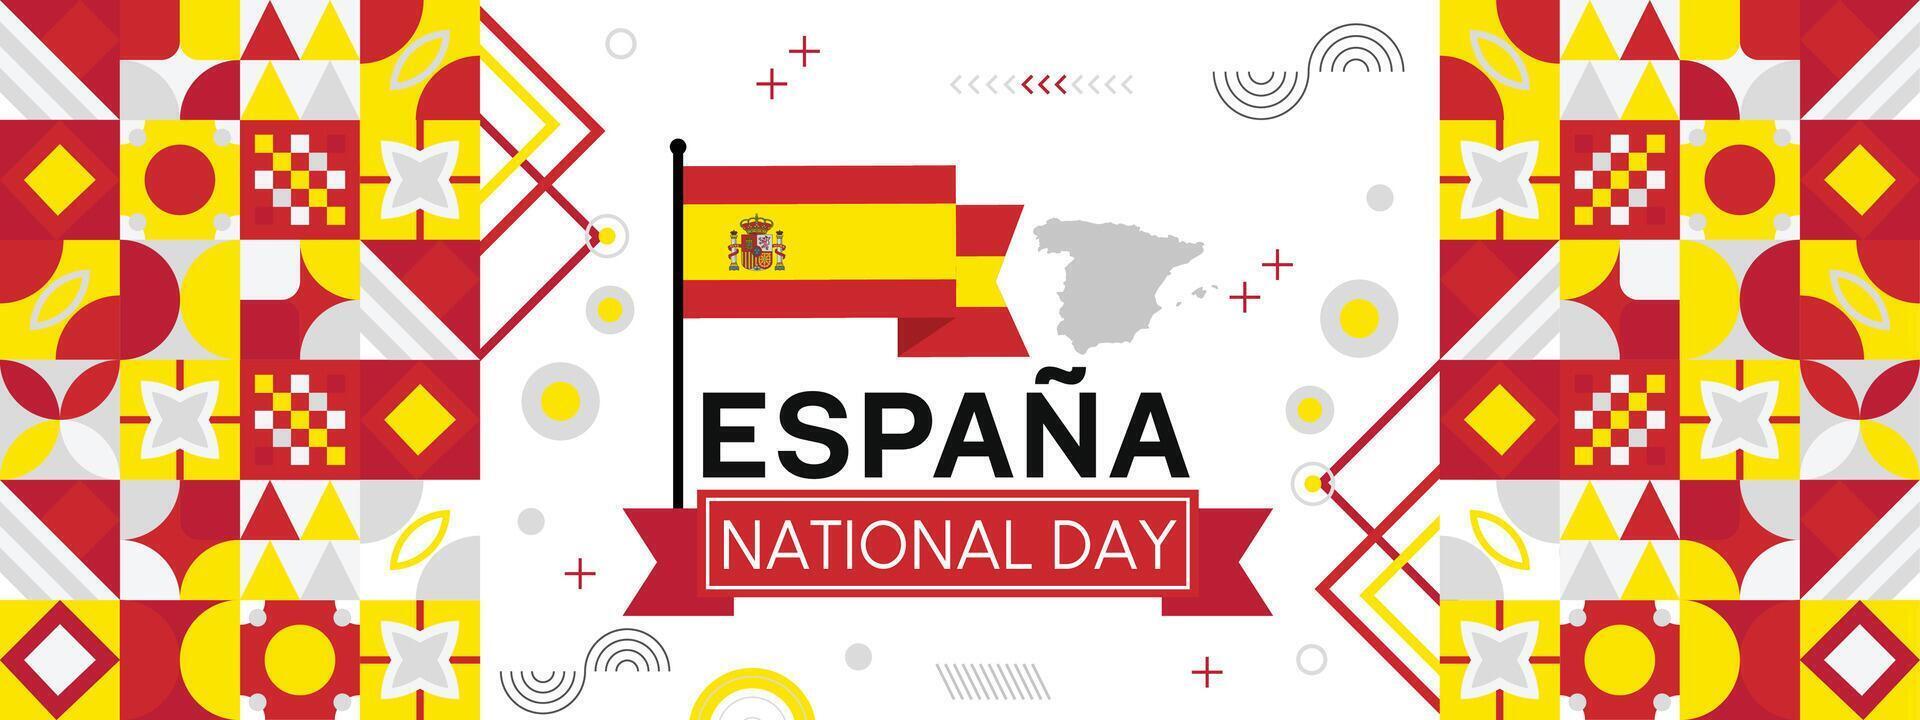 Spanien nationell dag baner för, espana eller espania med abstrakt retro modern geometrisk design. flagga av Spanien med typografi och röd gul Färg tema. vektor